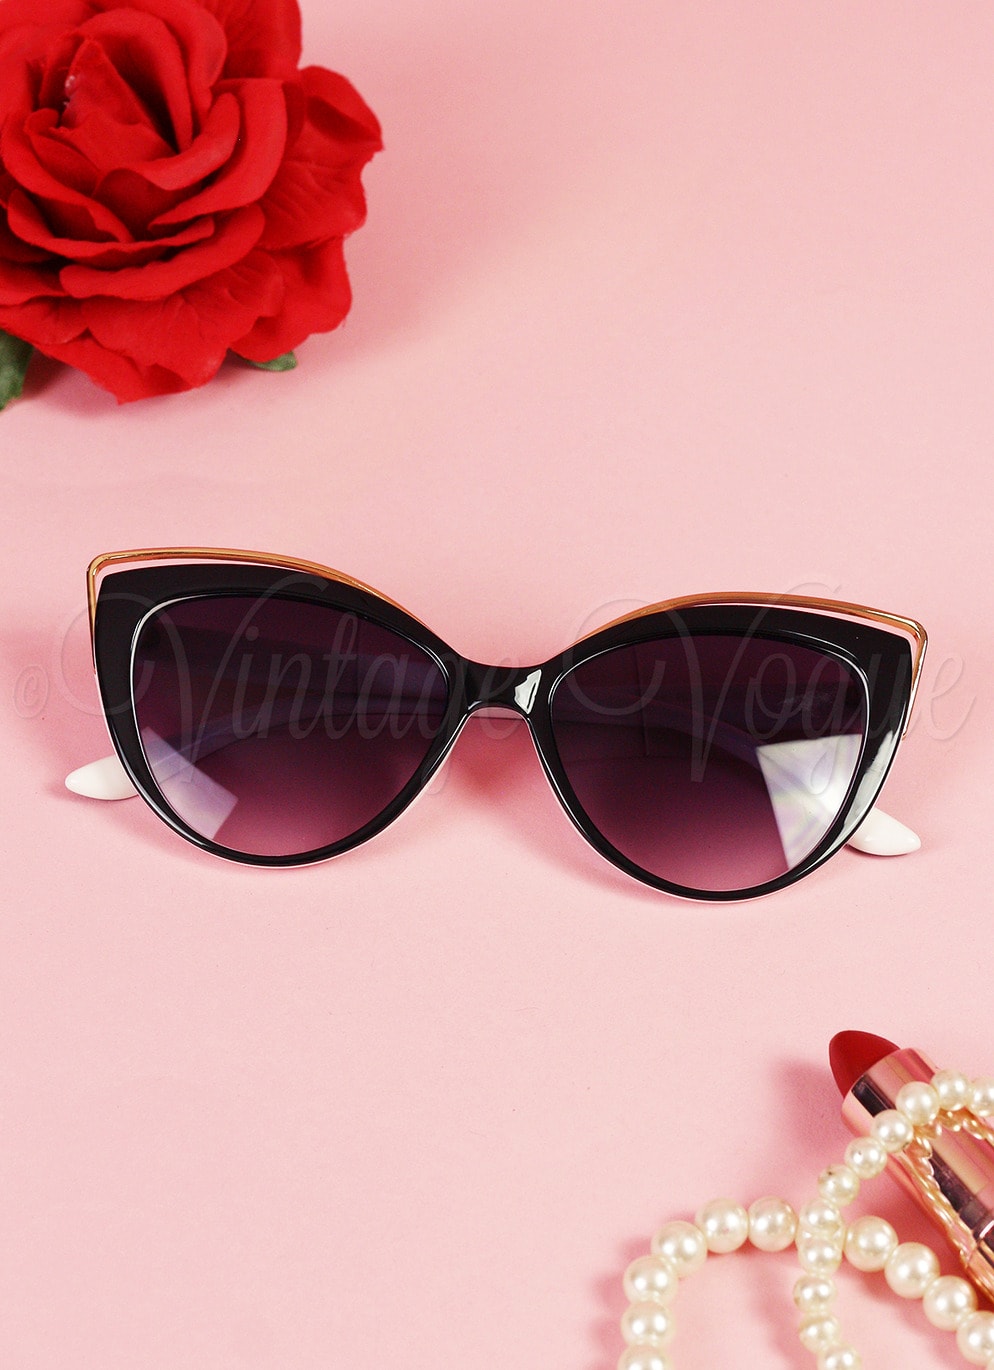 Oh so Retro! Vintage Sonnenbrille Elegant Cat Eye in Schwarz Weiß Gold